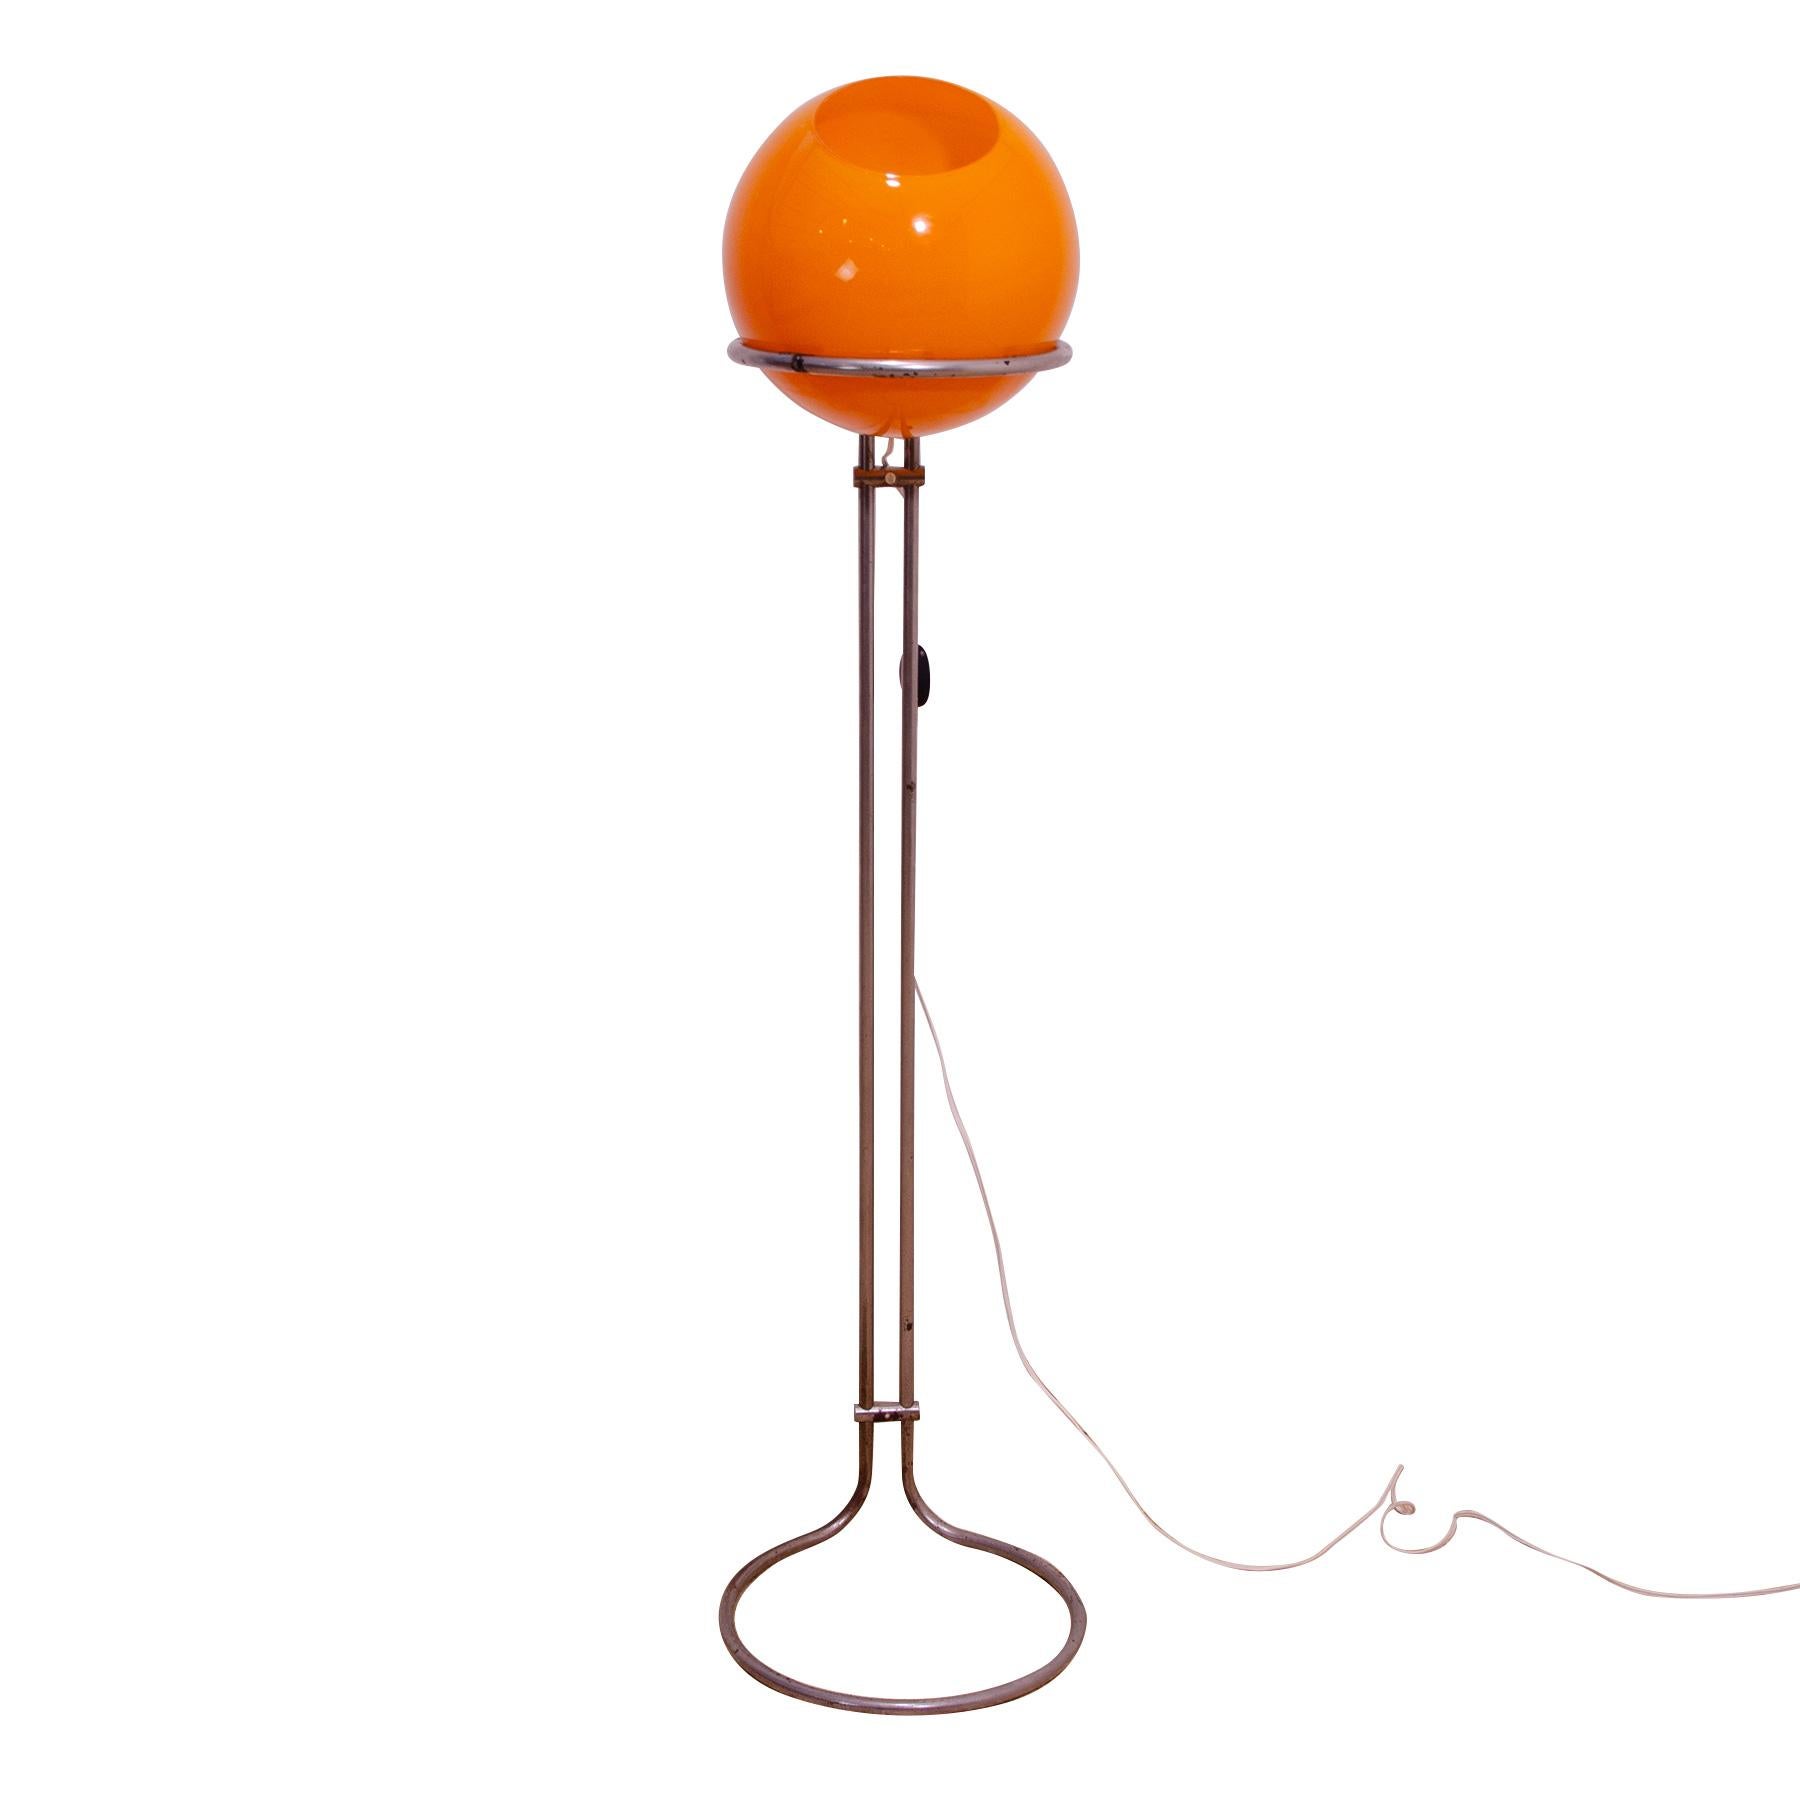 Ce lampadaire de l'ère atomique a été conçu en 1973 par le designer hongrois Tibor Hazi et fabriqué en Hongrie dans les années 1970.

La lampe est fabriquée en verre opaque orange avec une surface mate et une construction chromée.
La forme arrondie